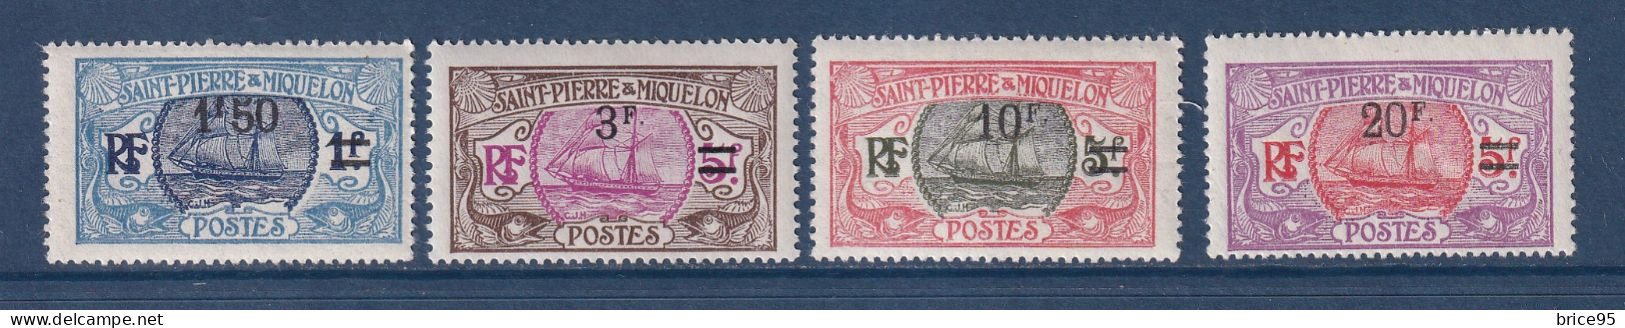 Saint Pierre Et Miquelon - YT N° 125 à 128 * - Neuf Avec Charnière - 1924 à 1927 - Unused Stamps